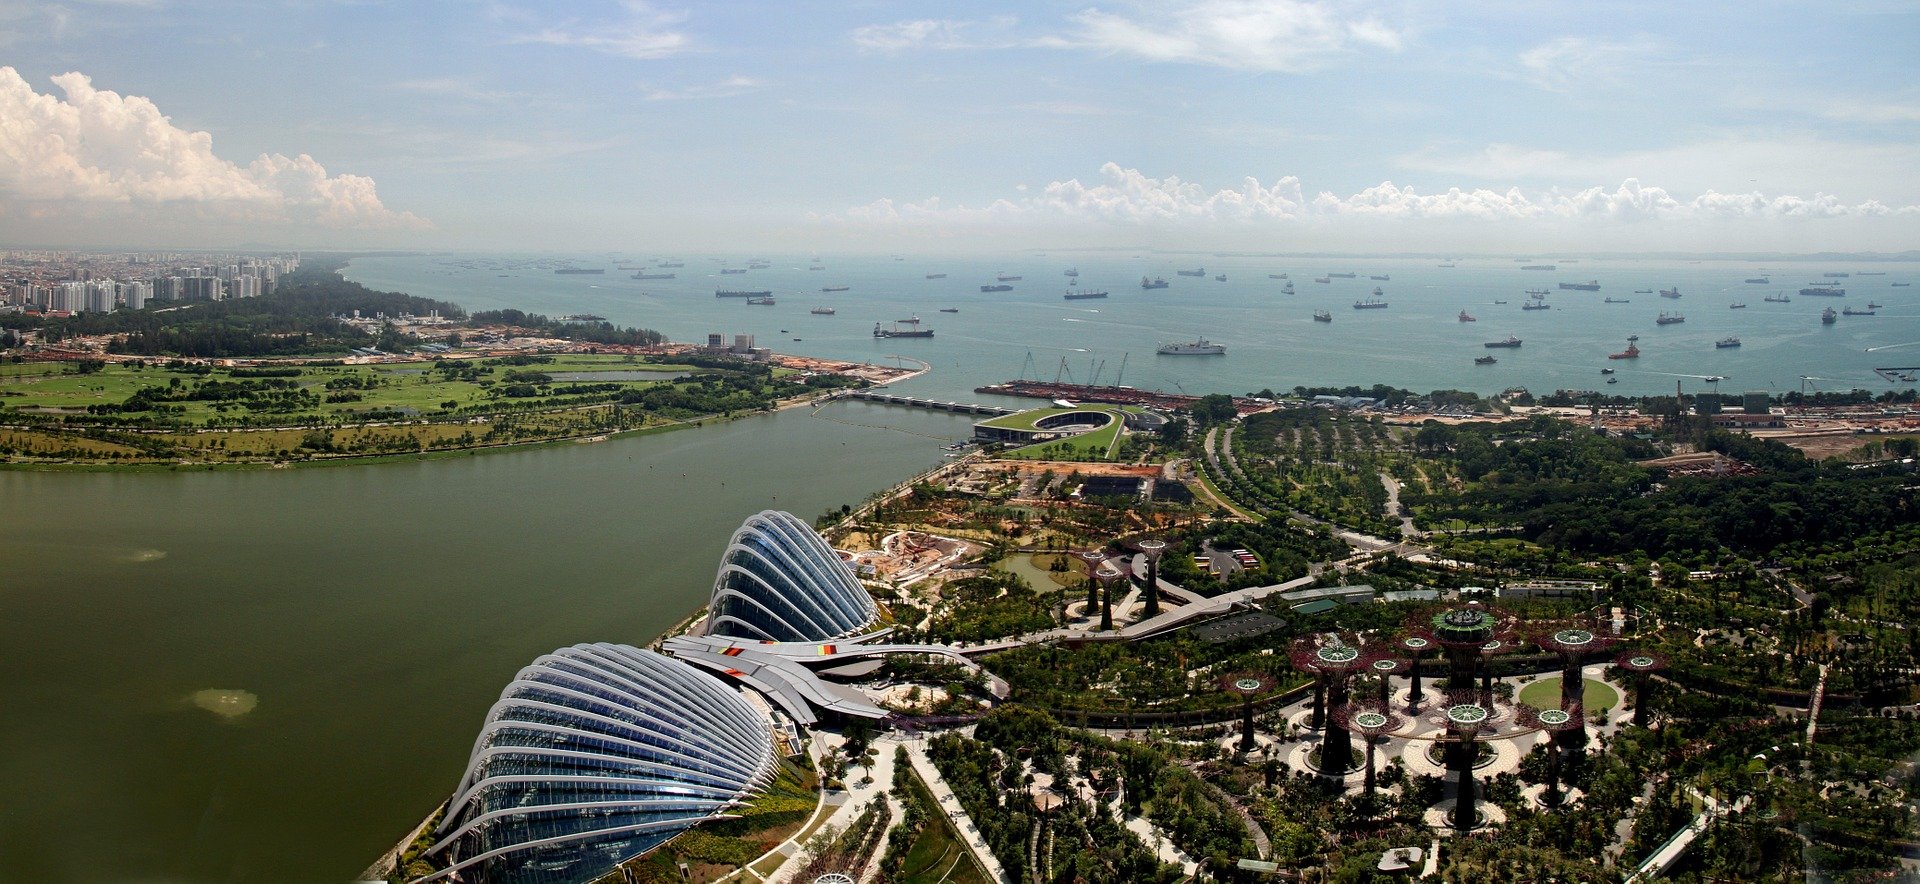 اهم الأماكن السياحية في سنغافورة لسنة 2021-1